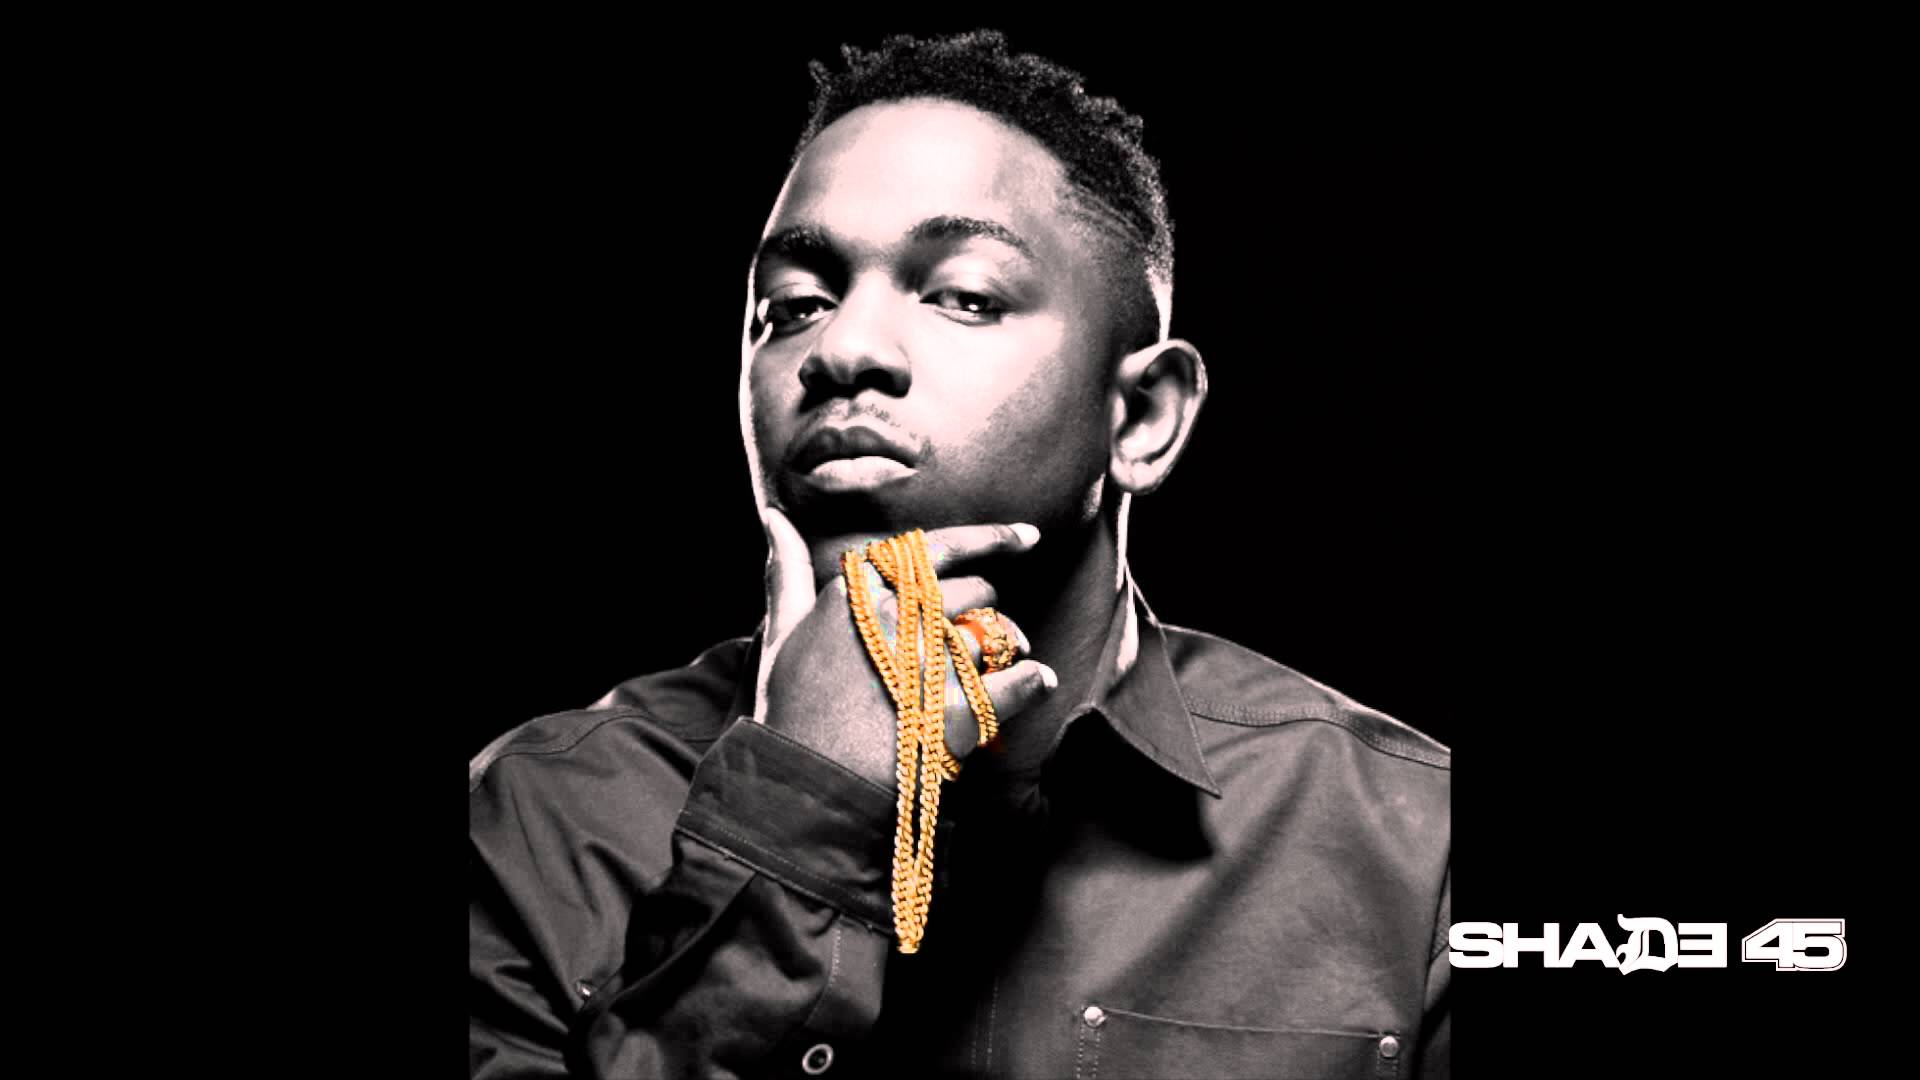 Kendrick Lamar Wallpaper, Incredible HDQ Kendrick Lamar Image